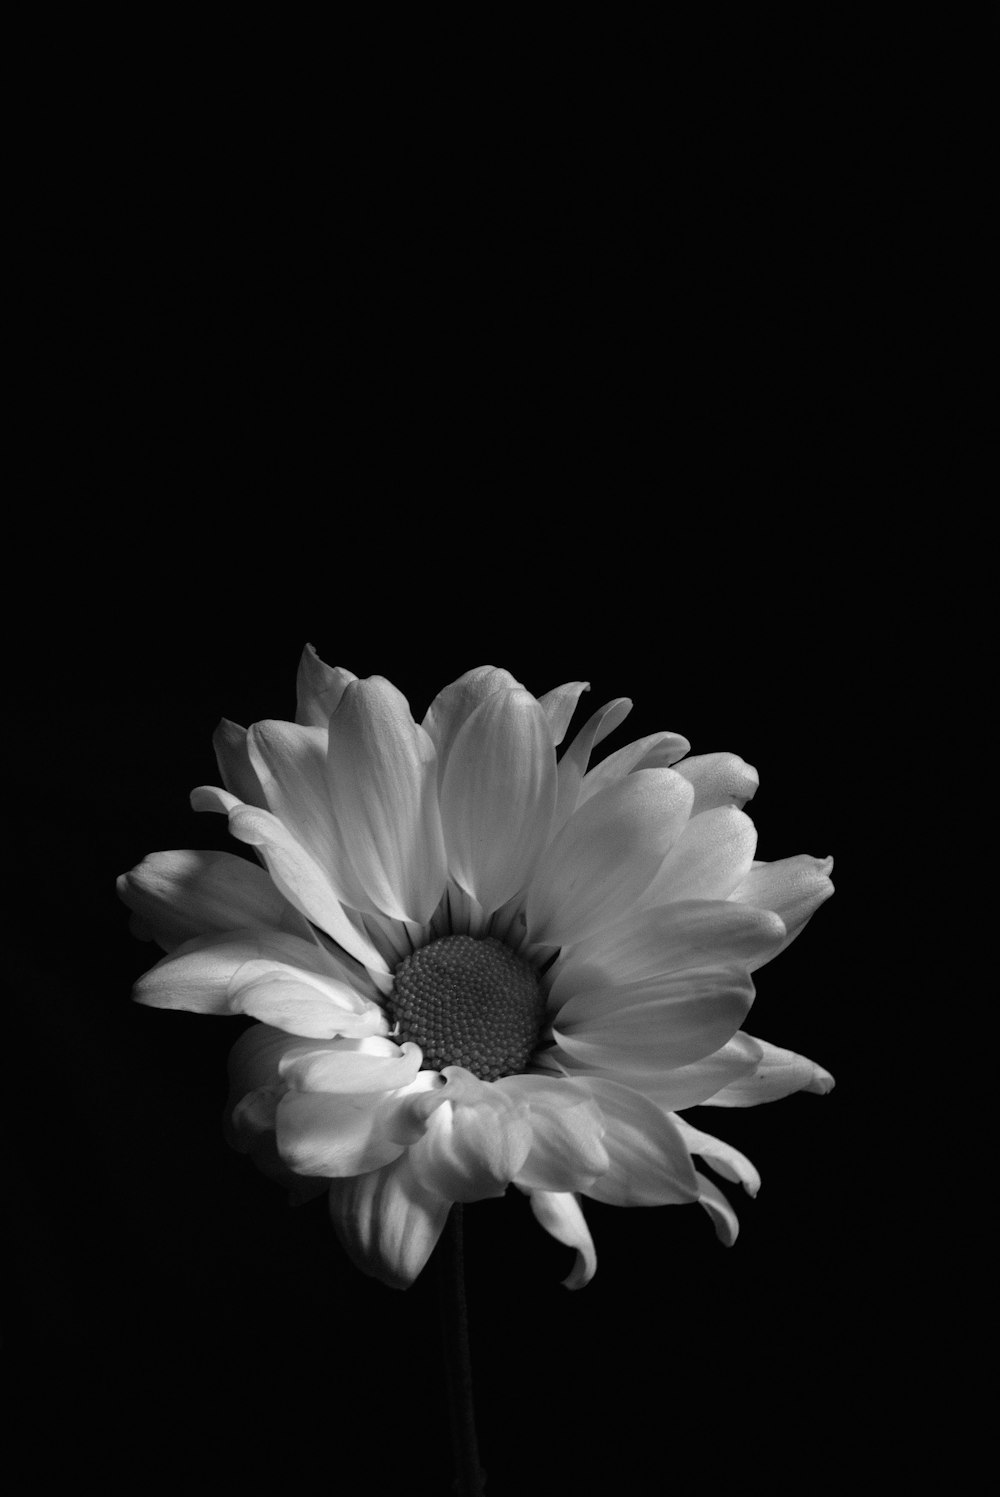 Hoa trắng nền đen là một tác phẩm nghệ thuật tinh tế, thể hiện sự thanh lịch và độc đáo. Hình ảnh này chắc chắn sẽ thu hút mọi người đến và khám phá thêm vẻ đẹp của bức tranh hoa trắng nền đen này.